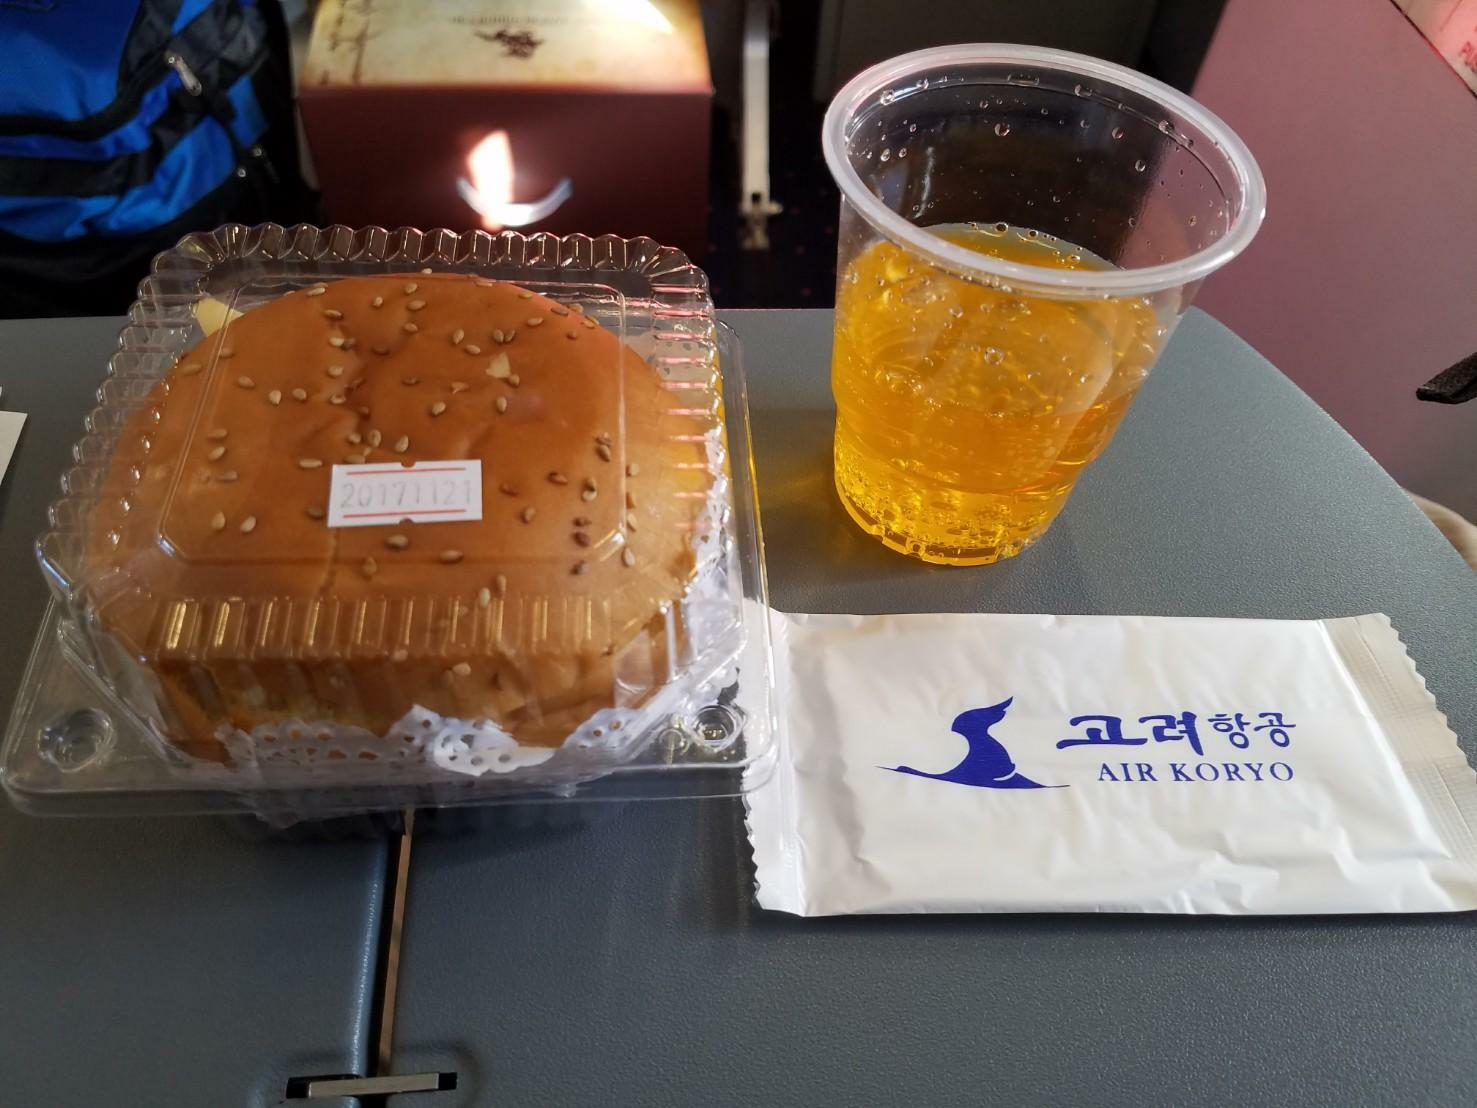 2017年11月、北京から平壌に向かう高麗航空の機内食はハンバーガーだった